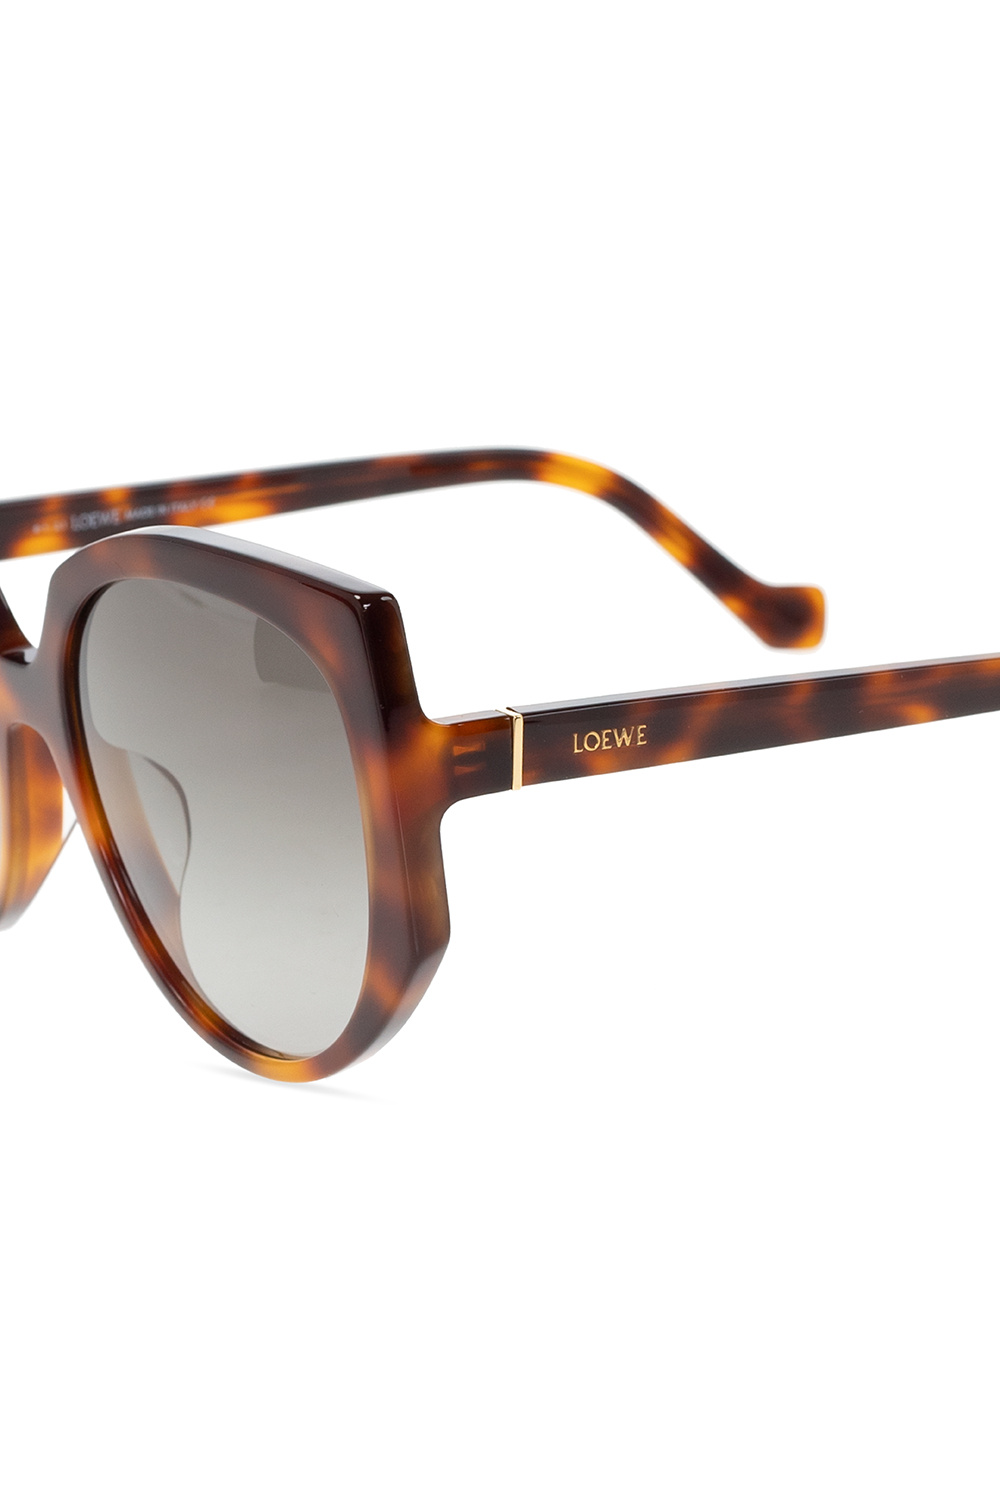 Loewe B-I large square sunglasses